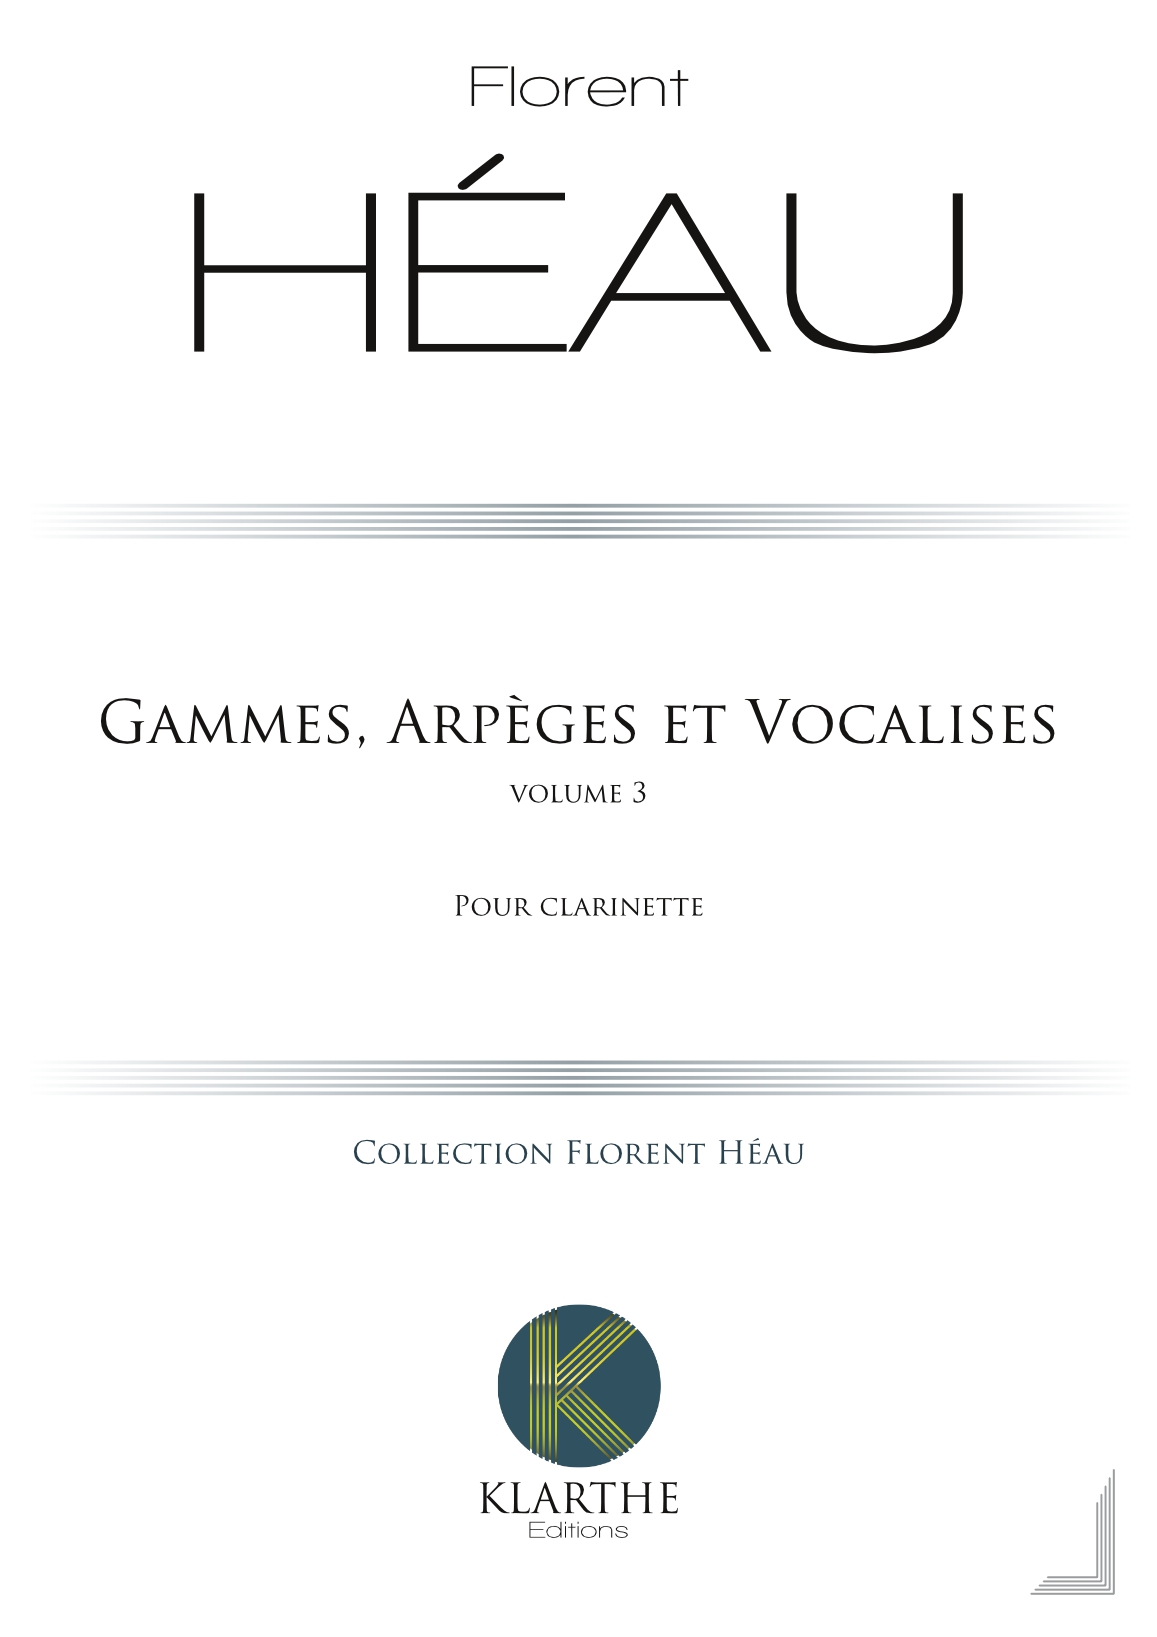 Gammes, Arpèges et Vocalises Vol 3 (HEAU FLORENT)